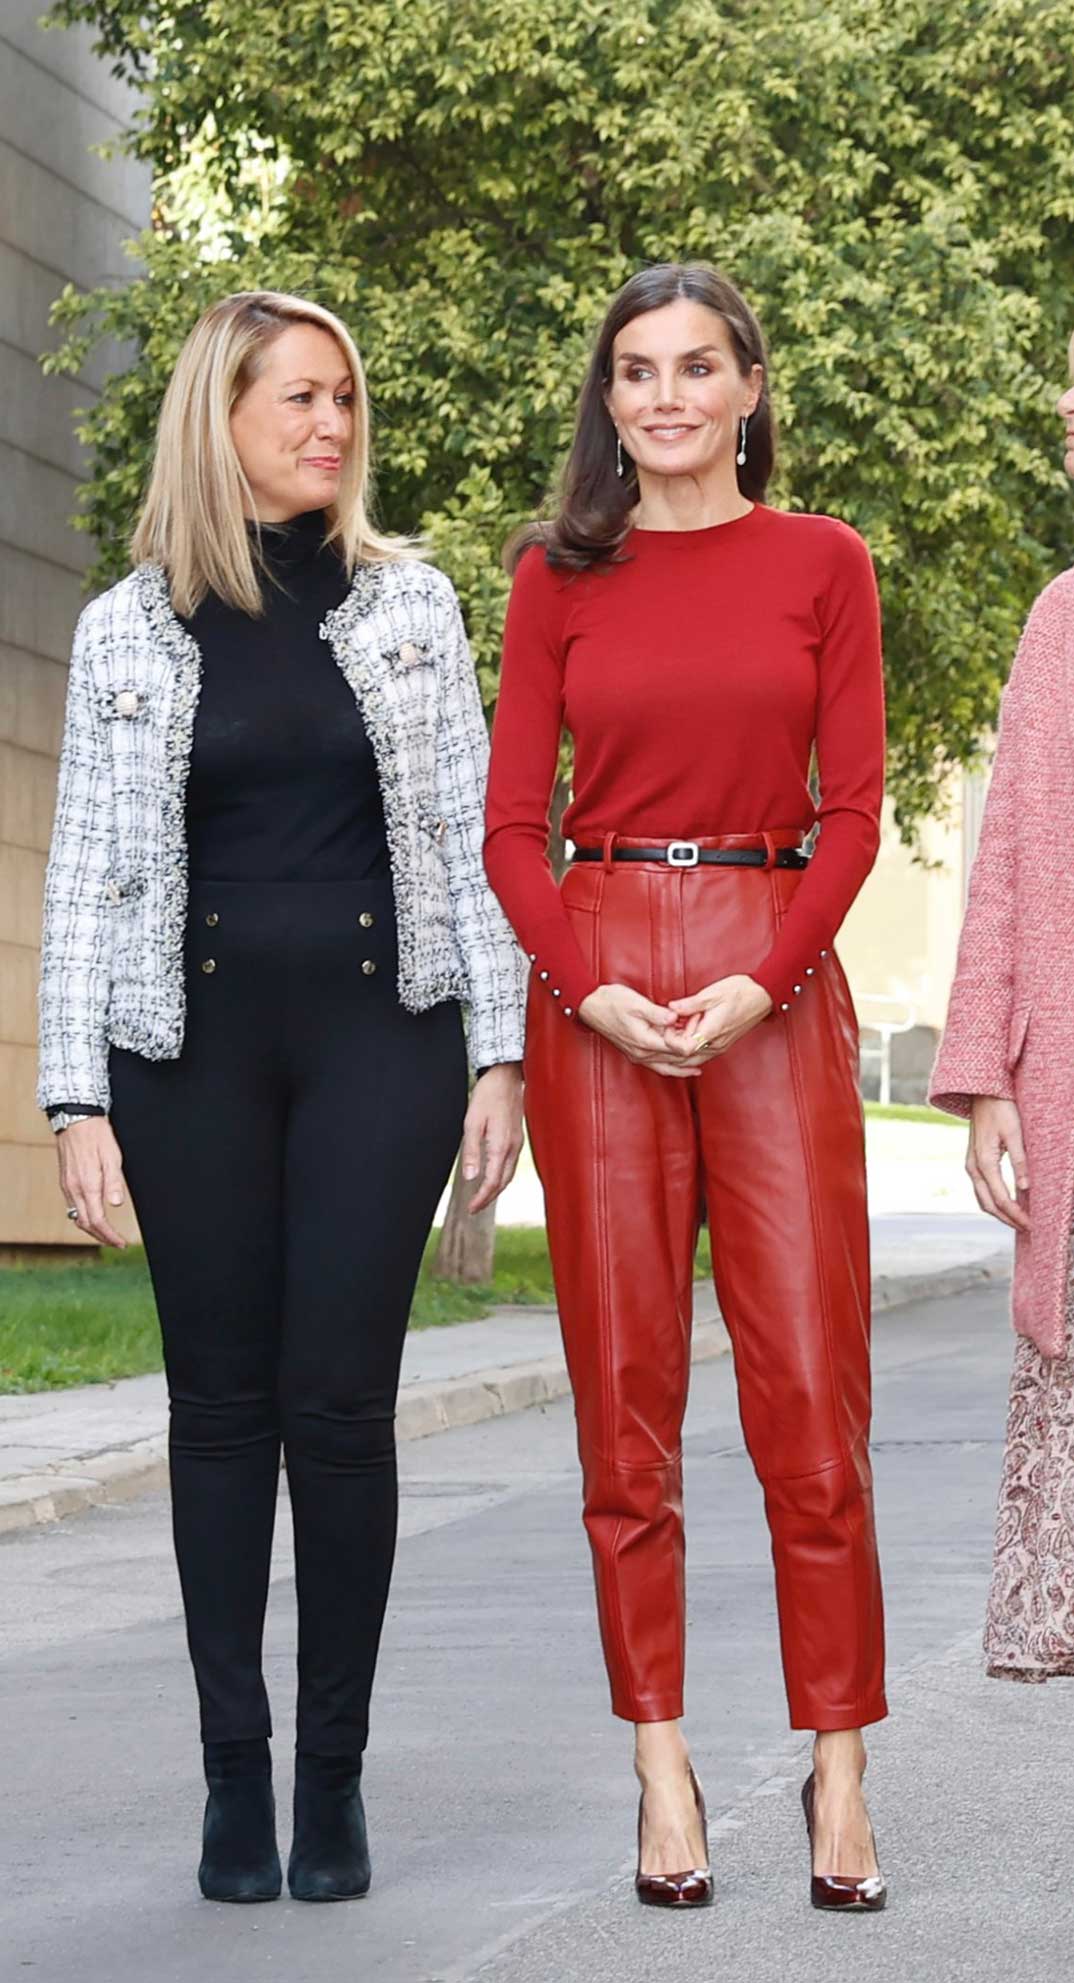 El look rompedor la reina Letizia, con pantalones de cuero rojo - magazinespain.com